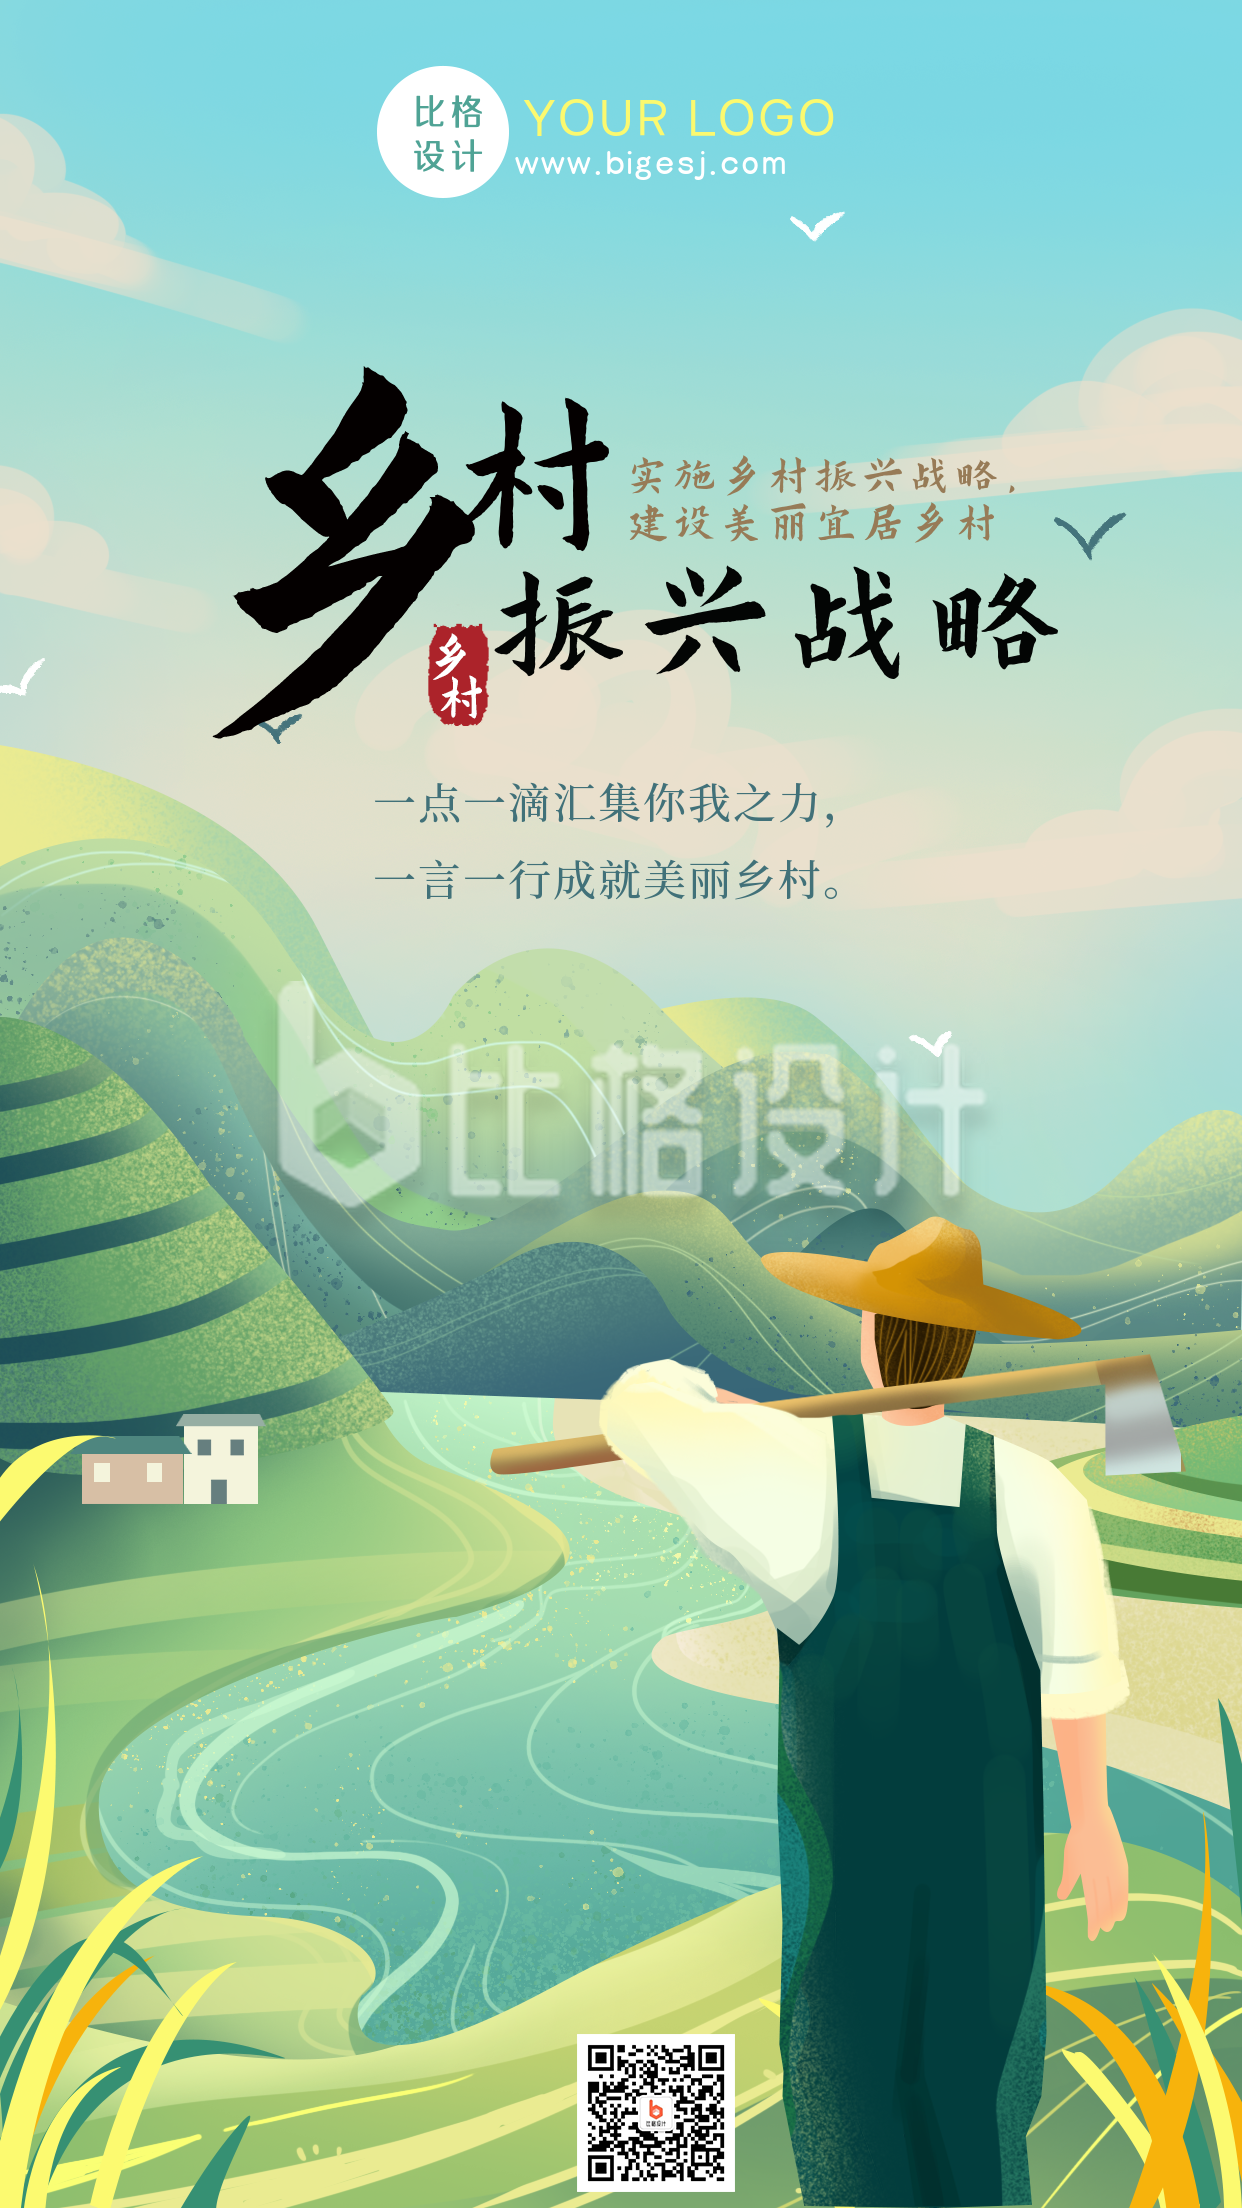 振兴乡村宣传风景手绘手机海报